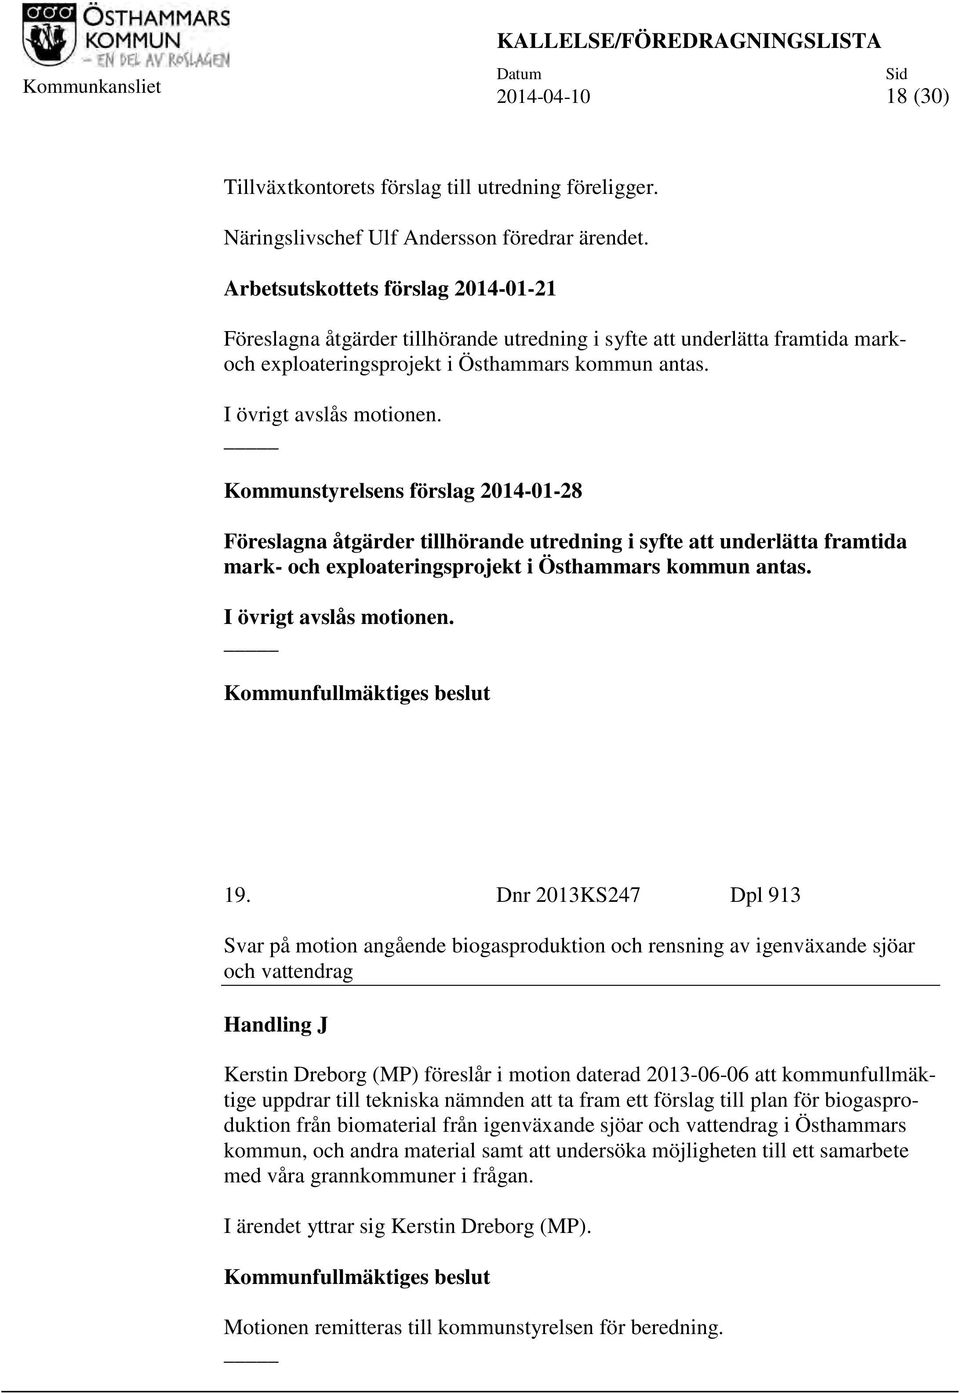 Kommunstyrelsens förslag 2014-01-28 Föreslagna åtgärder tillhörande utredning i syfte att underlätta framtida mark- och exploateringsprojekt i Östhammars kommun antas. I övrigt avslås motionen.